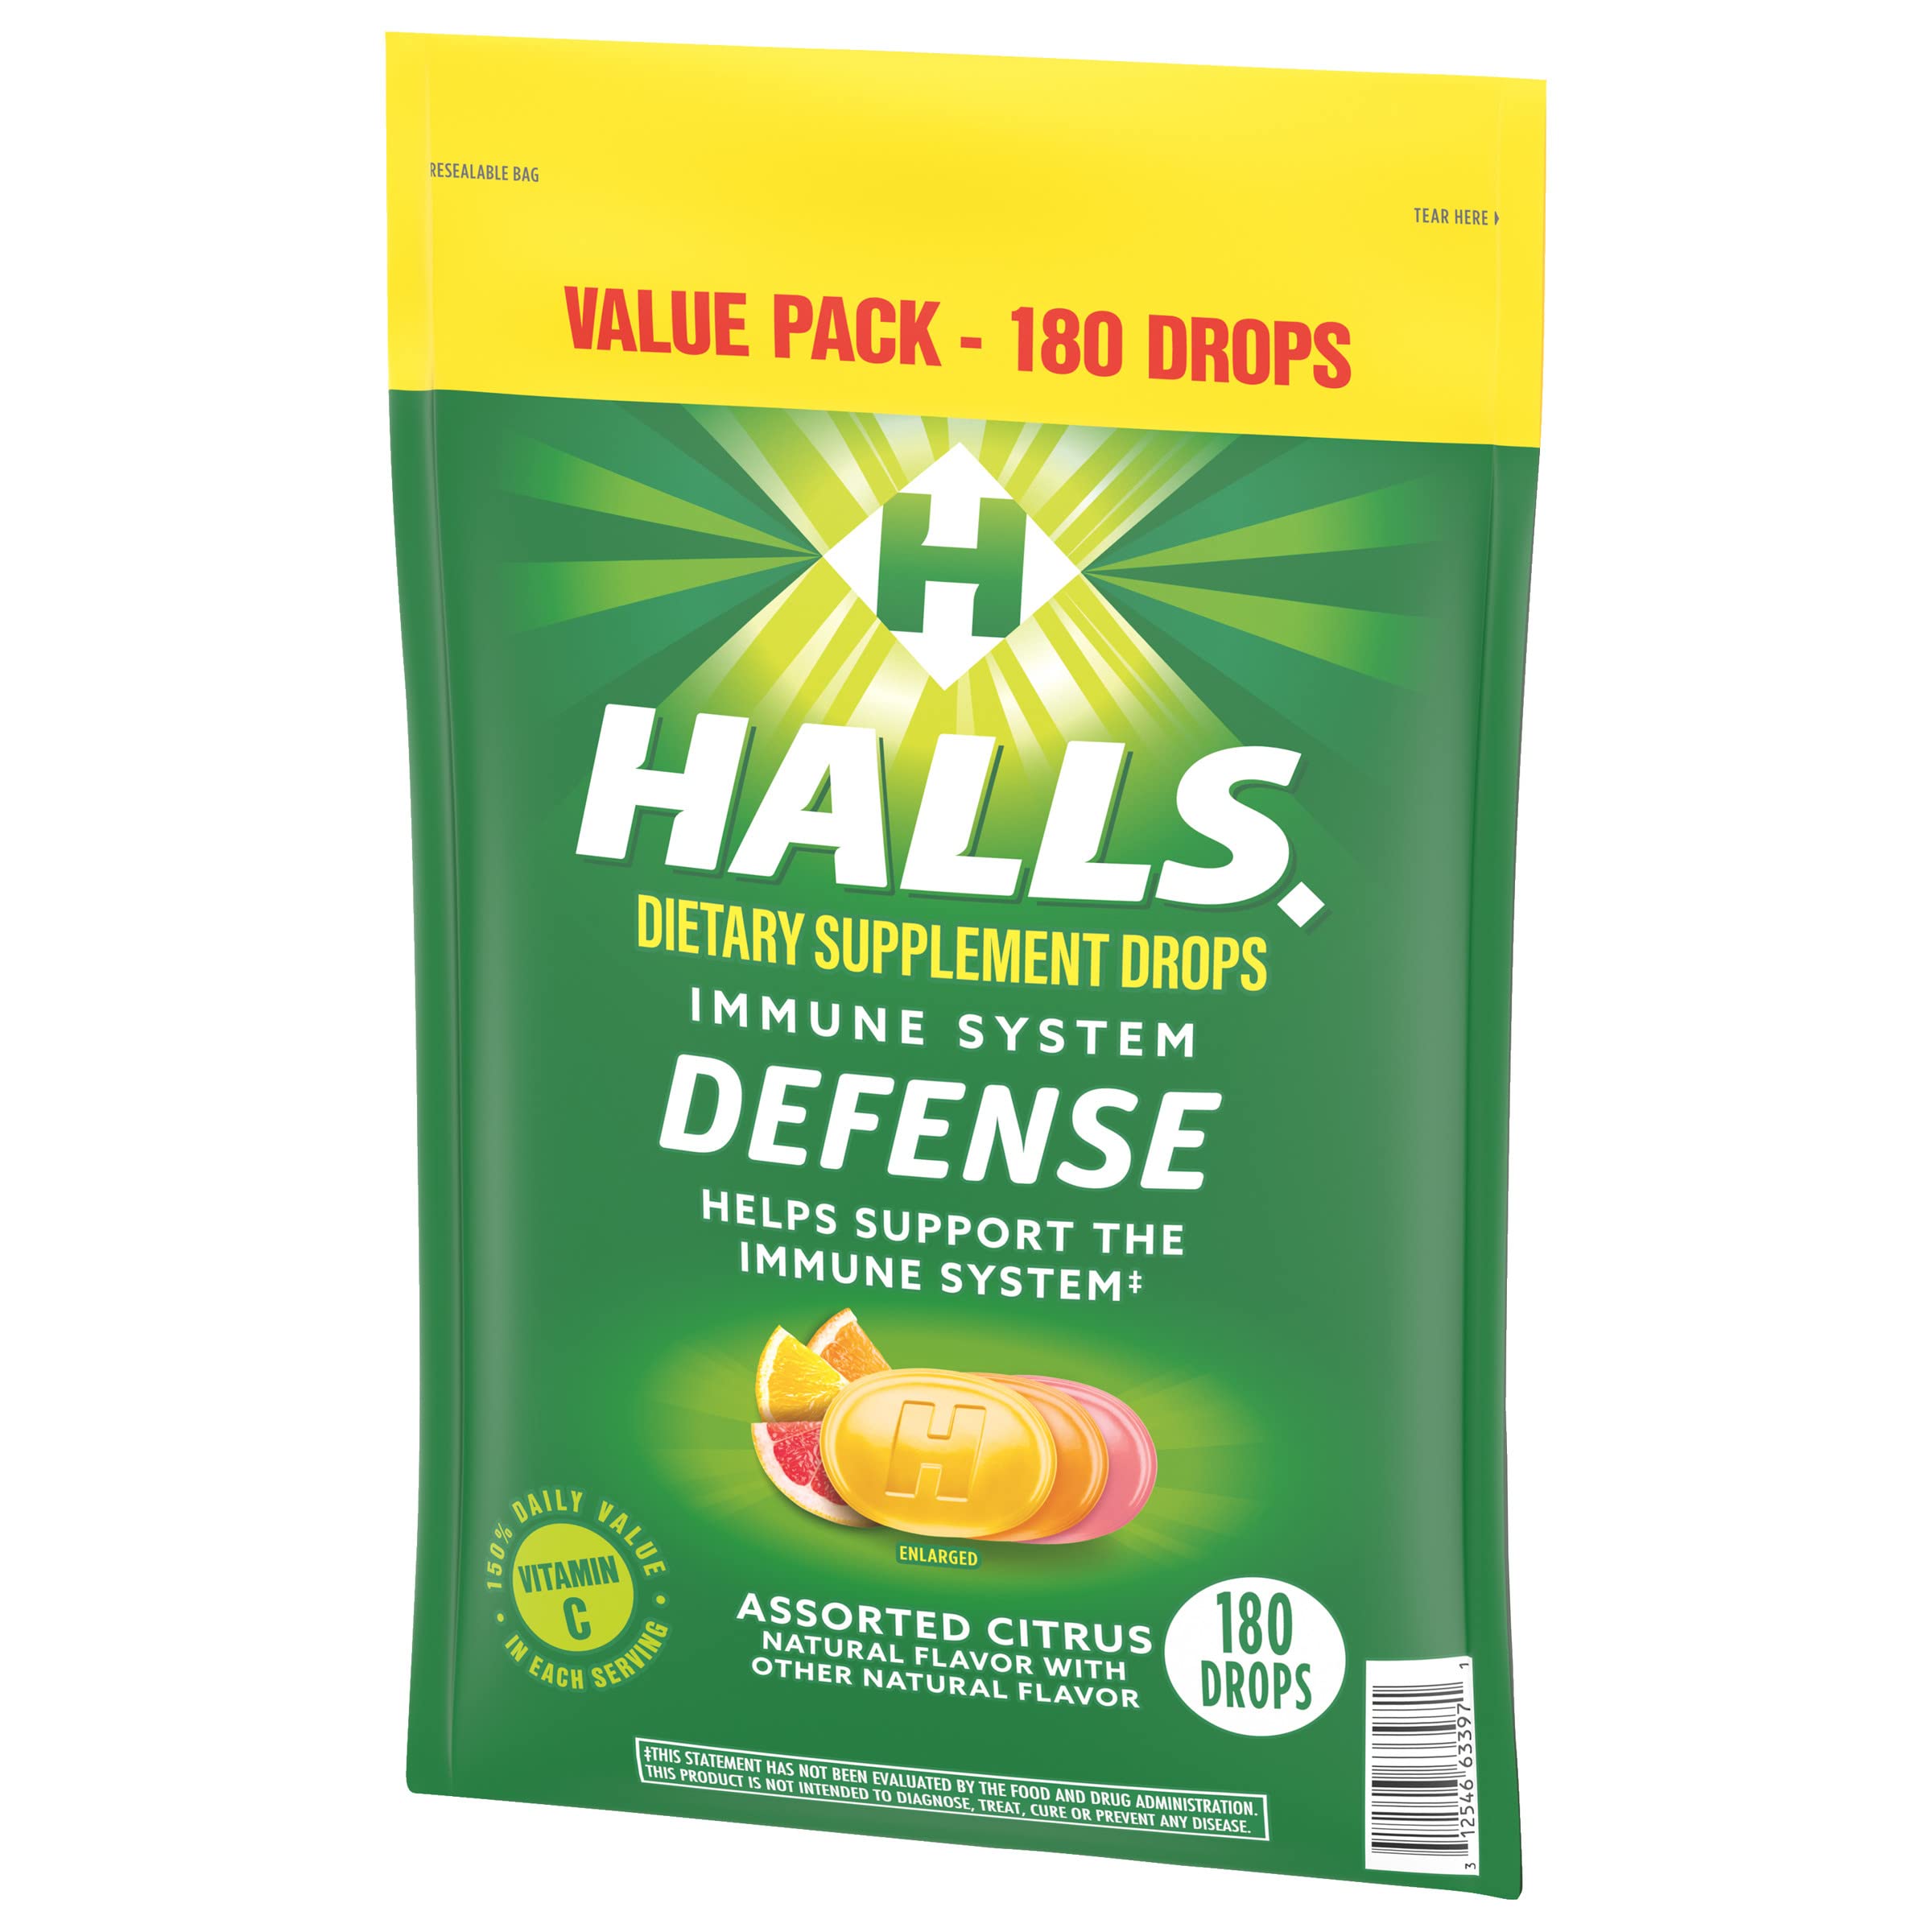 HALLS Defense Assorted Citrus Vitamin C Drops, Value Pack, 180 Drops